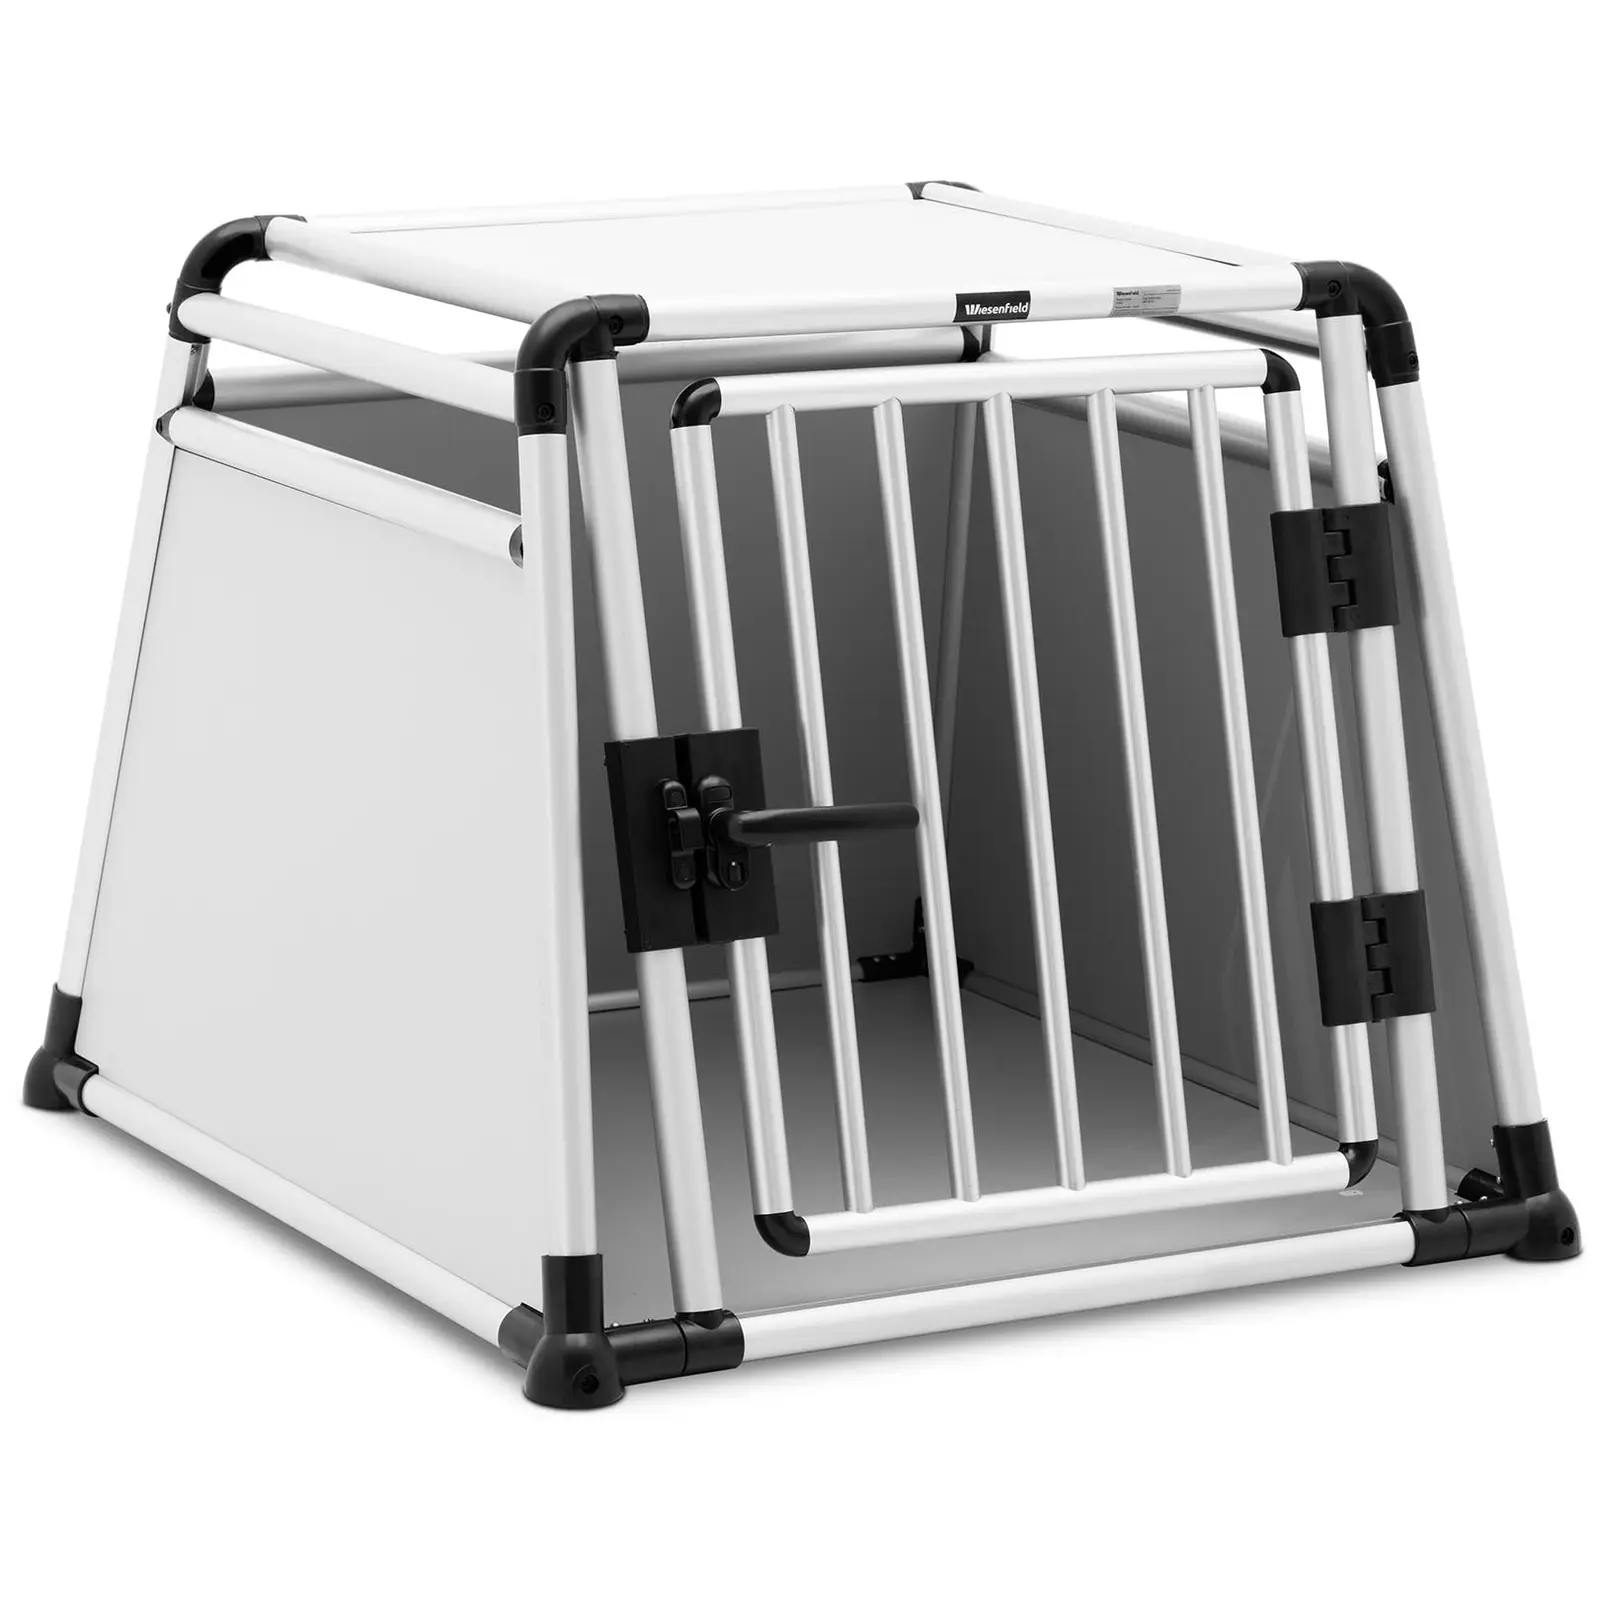 Caixa de transporte para cães - alumínio - forma trapezoidal - 82 x 75 x 64 cm